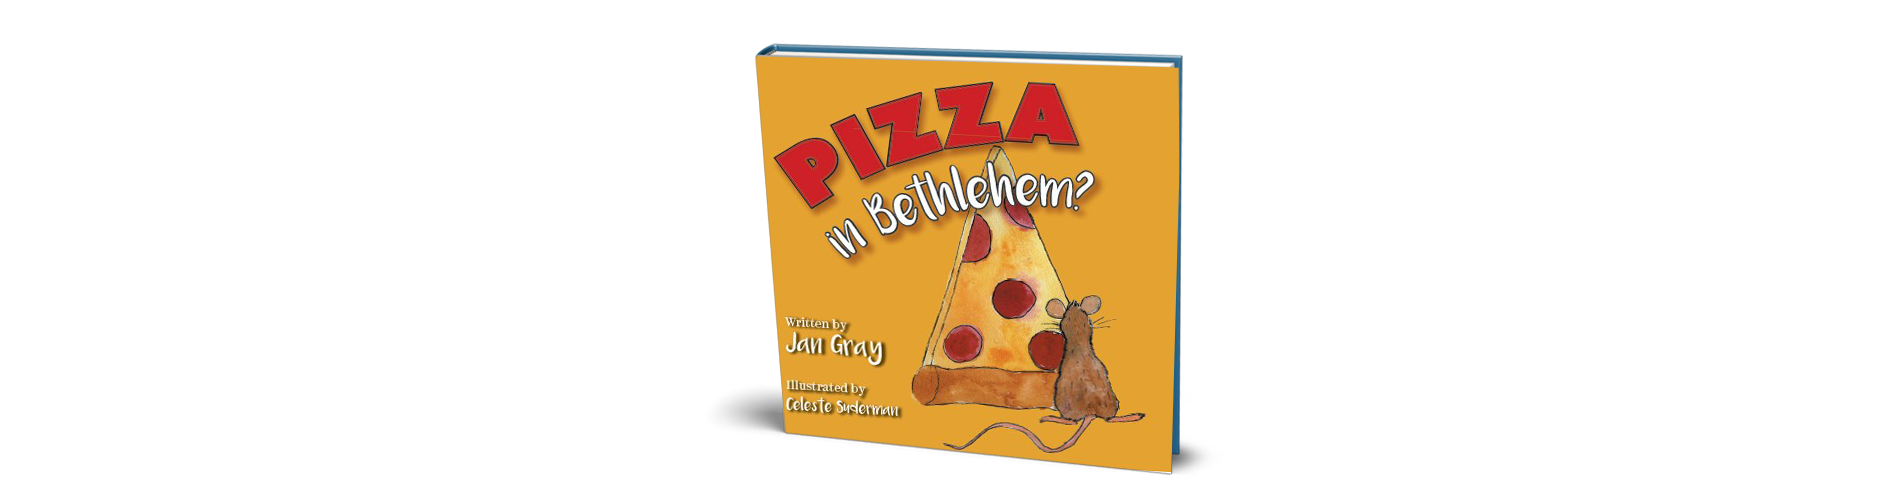 Pizza in Bethlehem? Children's book order now